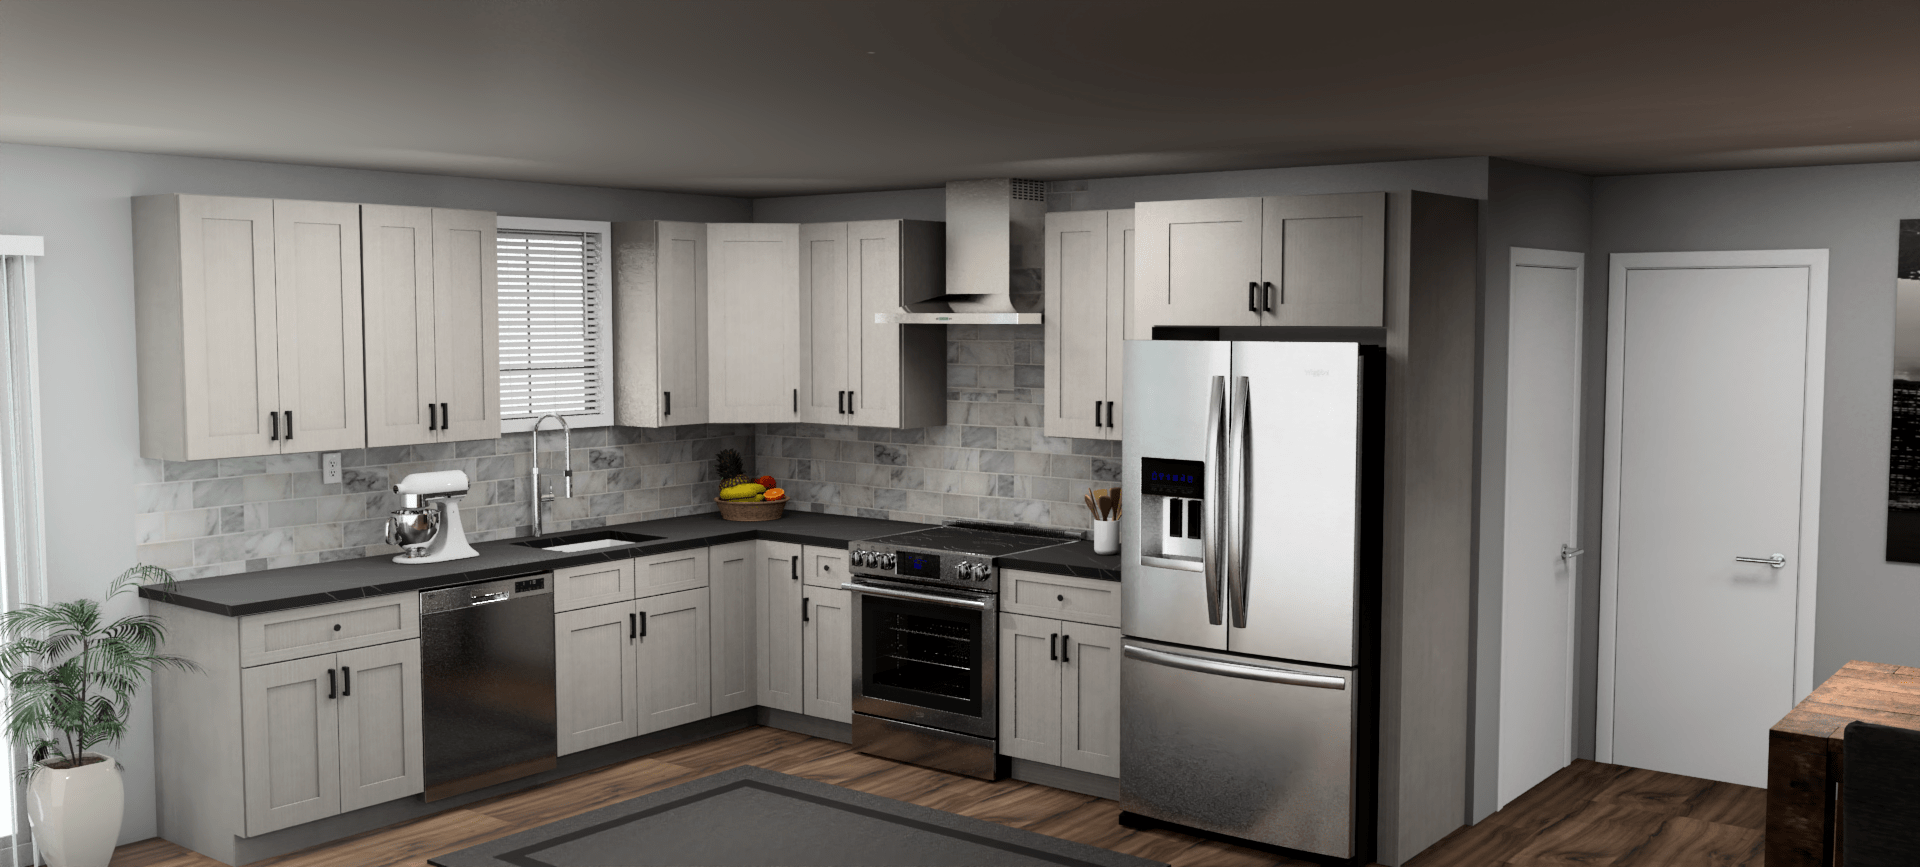 Fabuwood Allure Galaxy Horizon 10 x 12 L Shaped Kitchen Main Layout Photo